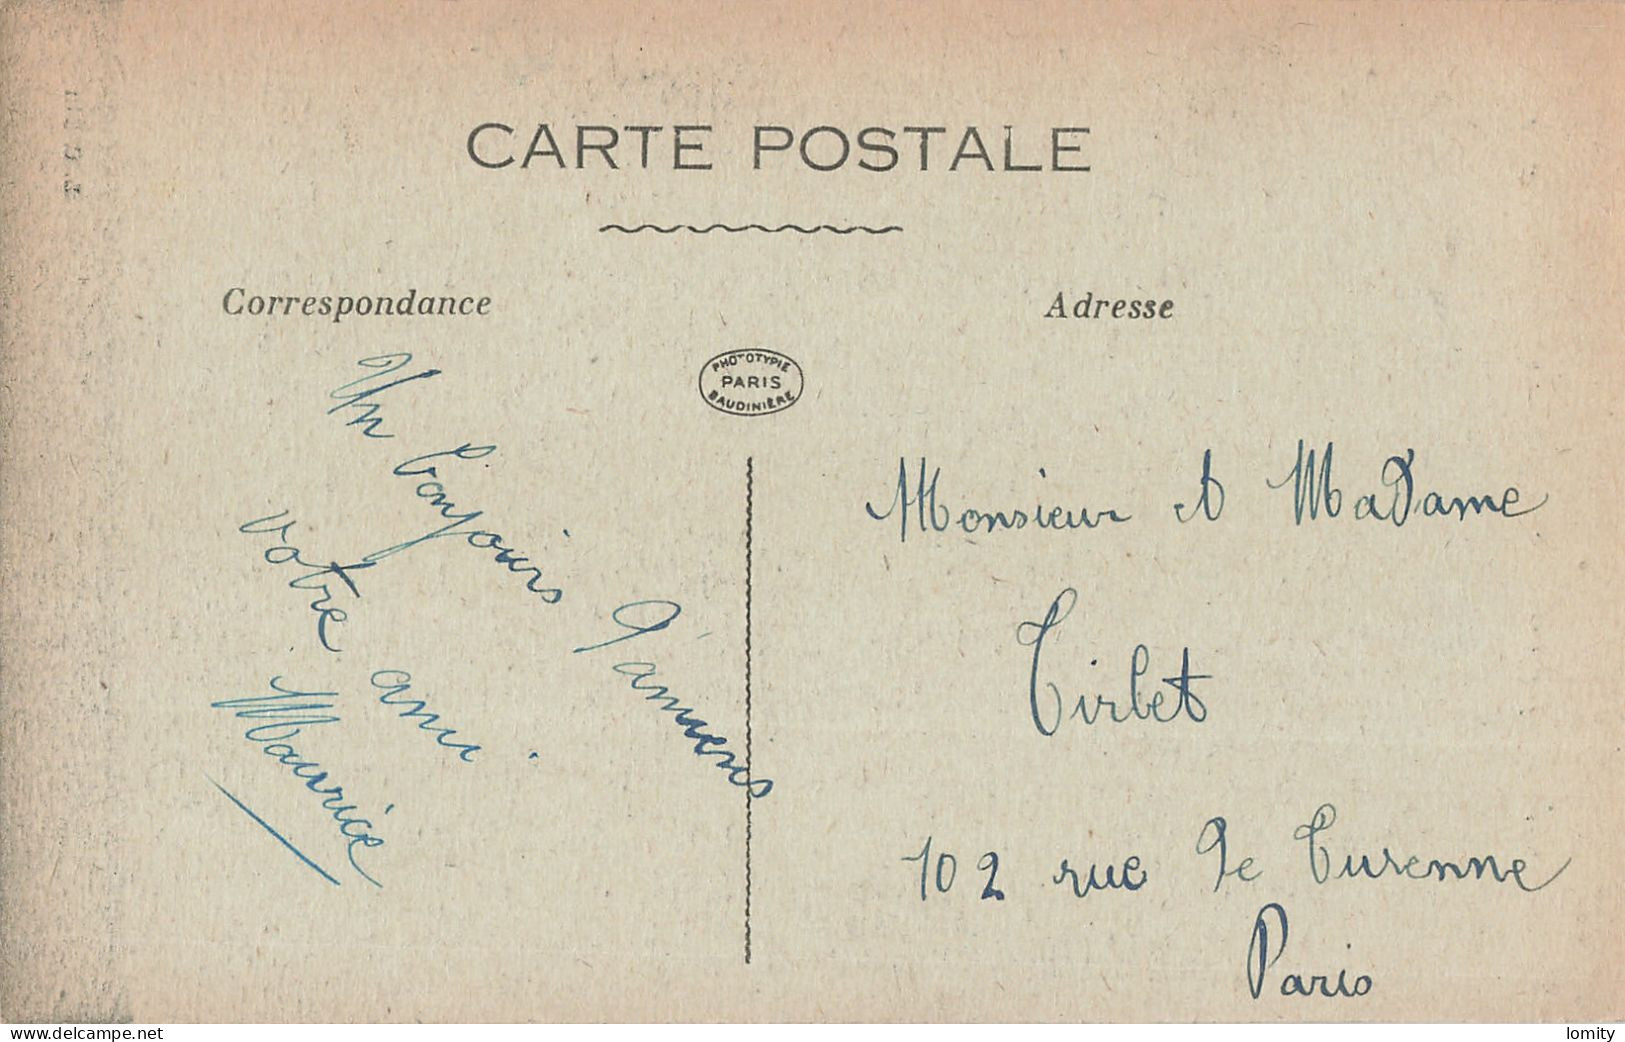 Destockage lot de 19 cartes postales CPA Somme Amiens Ham Albert Saint Valery sur Somme Ault Pierrepont sur Avre